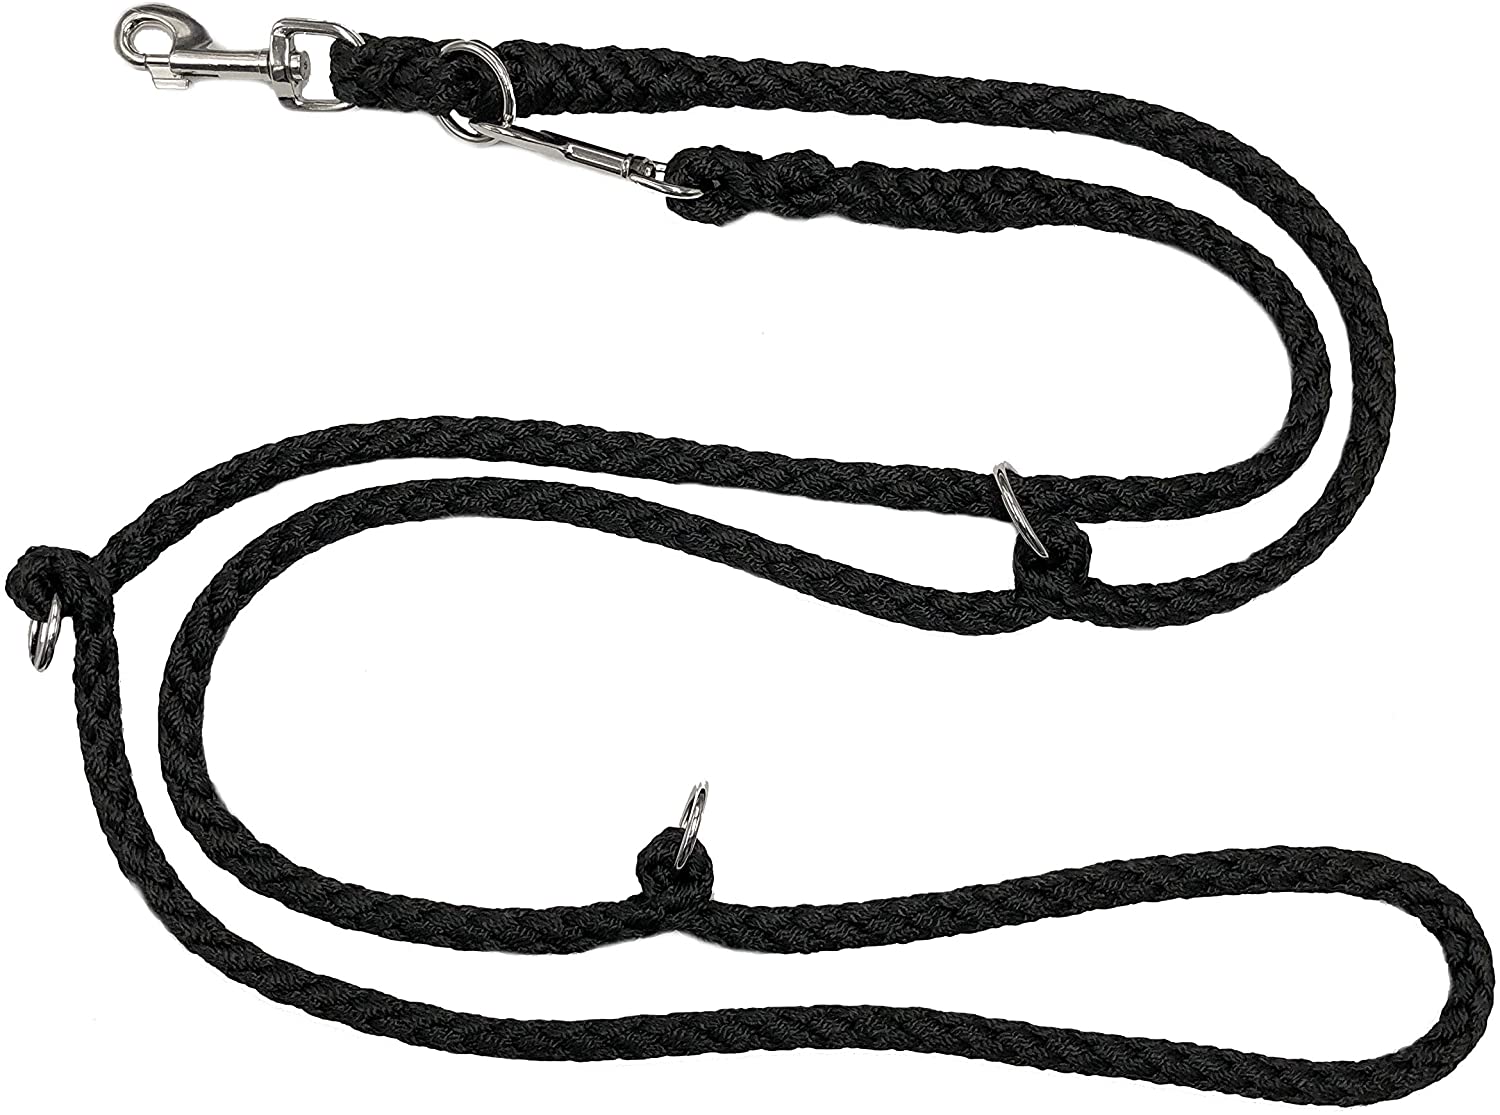  Perros cuerda doble cuerda Jumbo Negro 2,80 m 3 posiciones para perros hasta 70 kg 